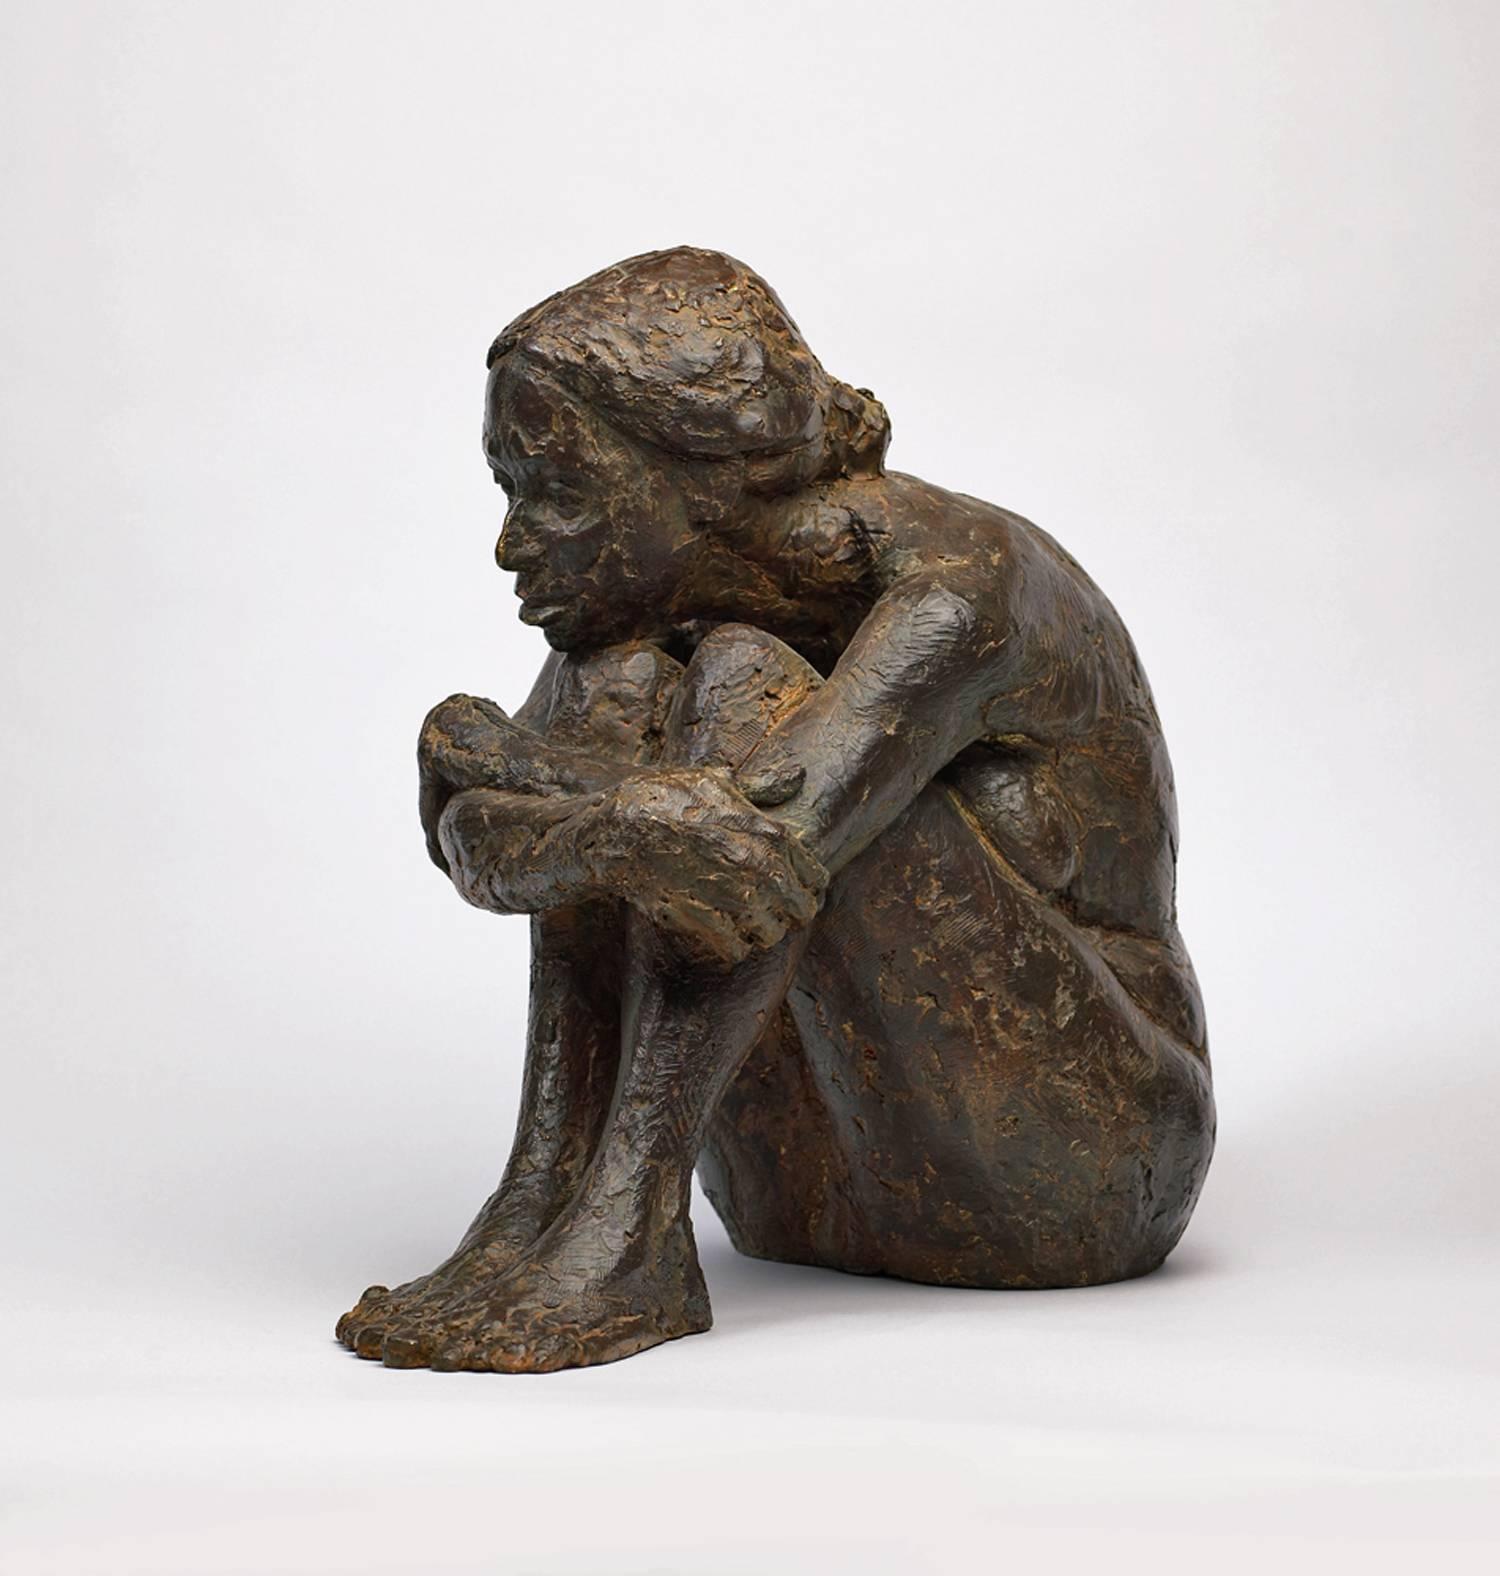 Sitzende Figur – Sculpture von Peter Brooke